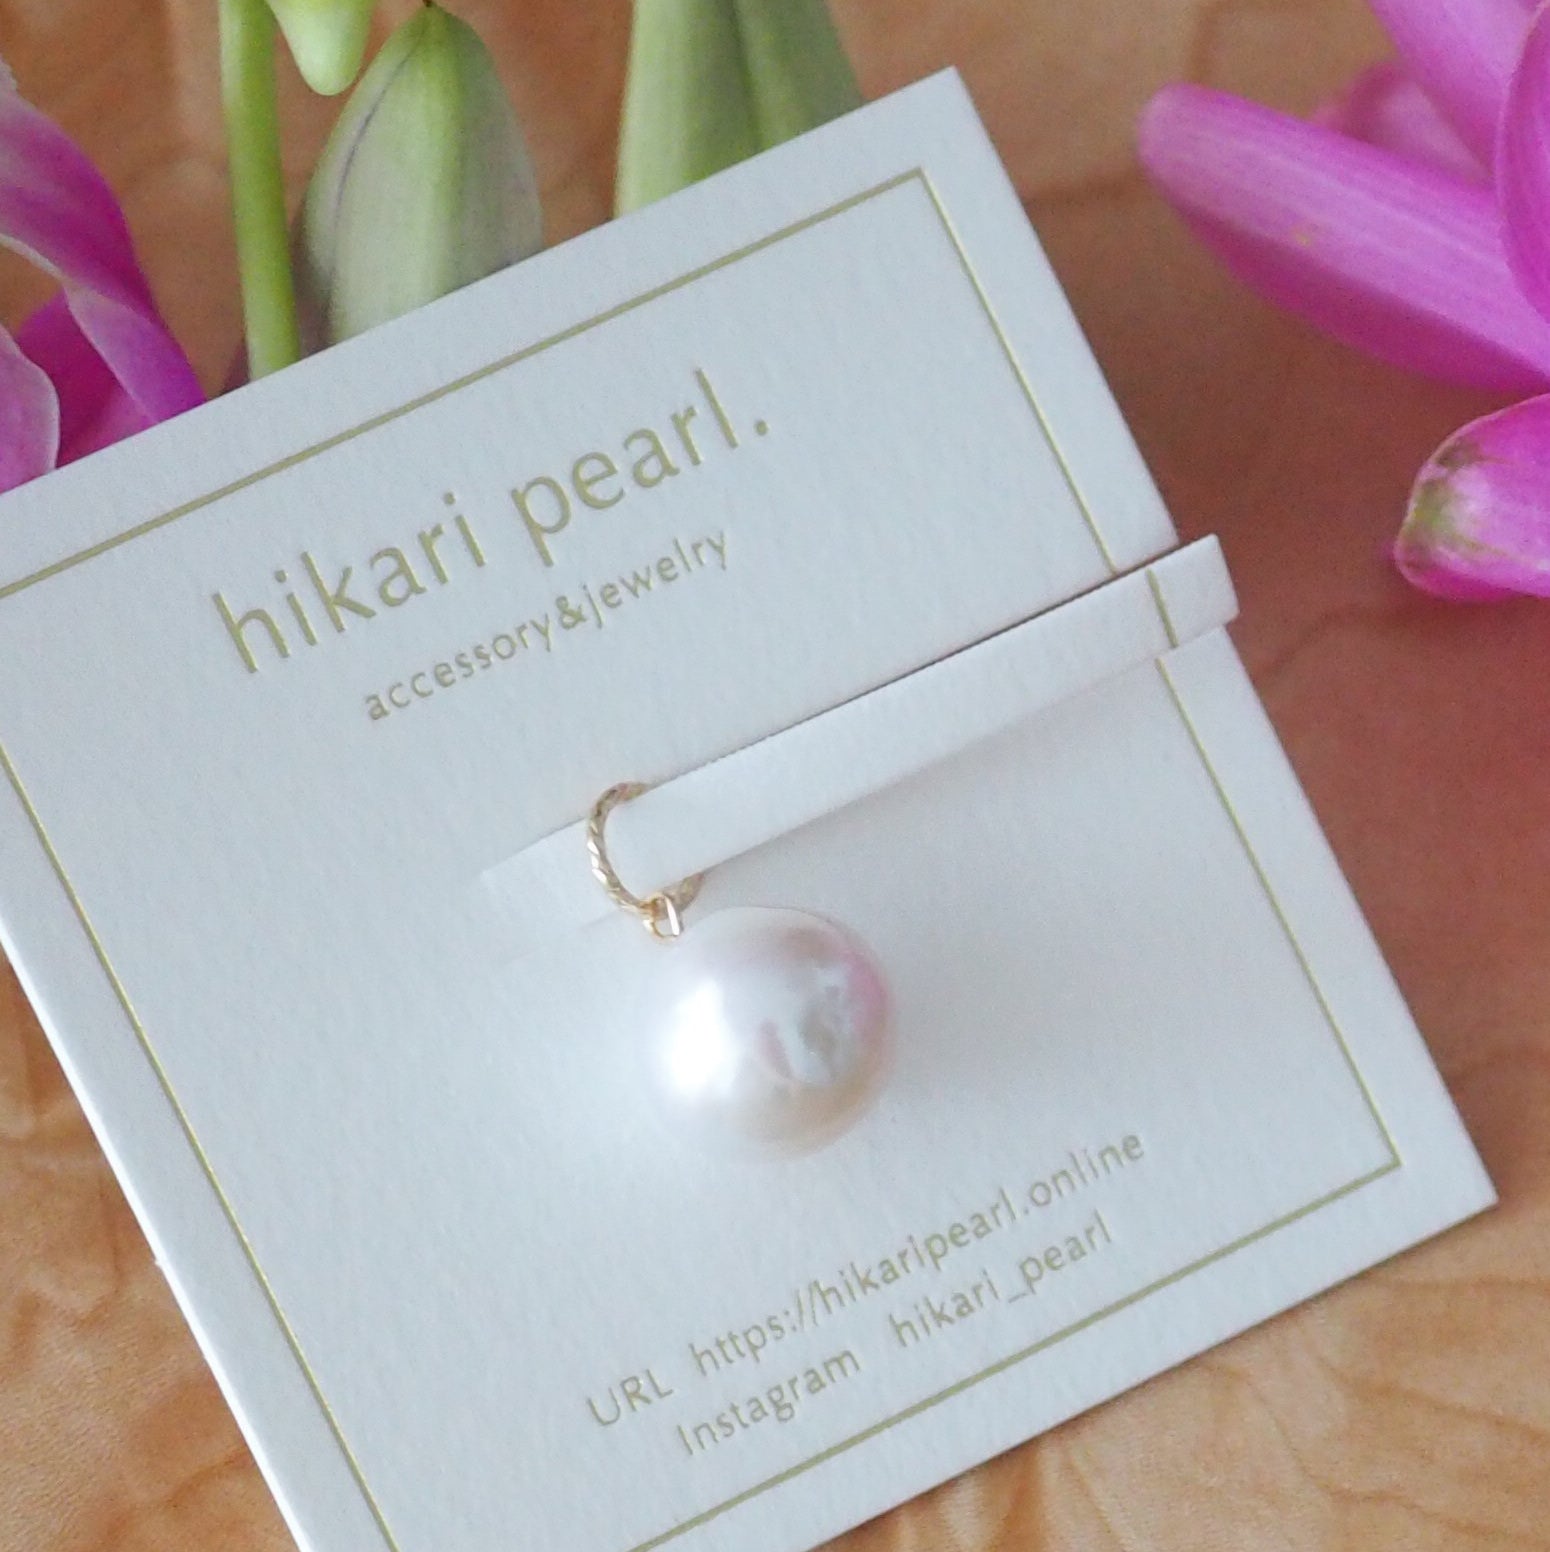 14kgf  teardrop fresh water  pearl ペンダントトップ　ネックレス - hikari pearl.